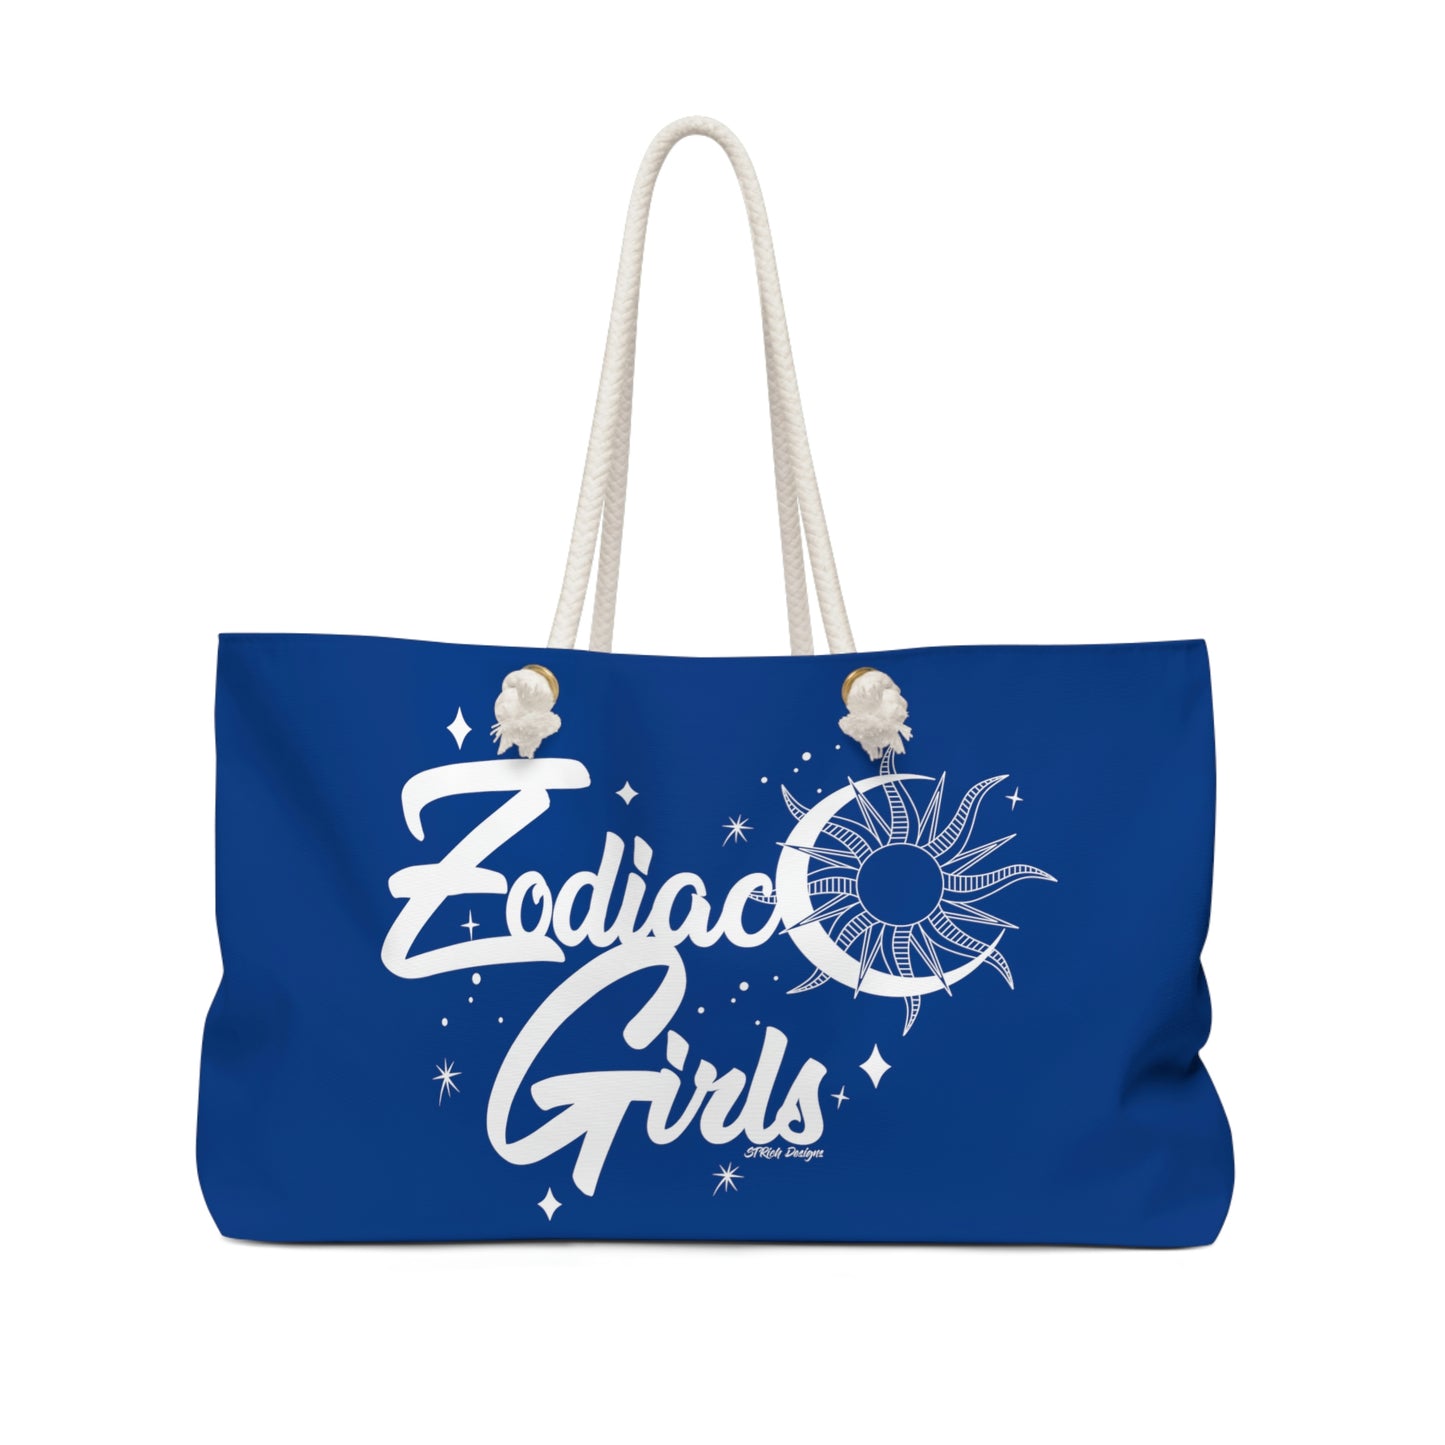 Zodiac Girls "Capricorn" Weekender Bag